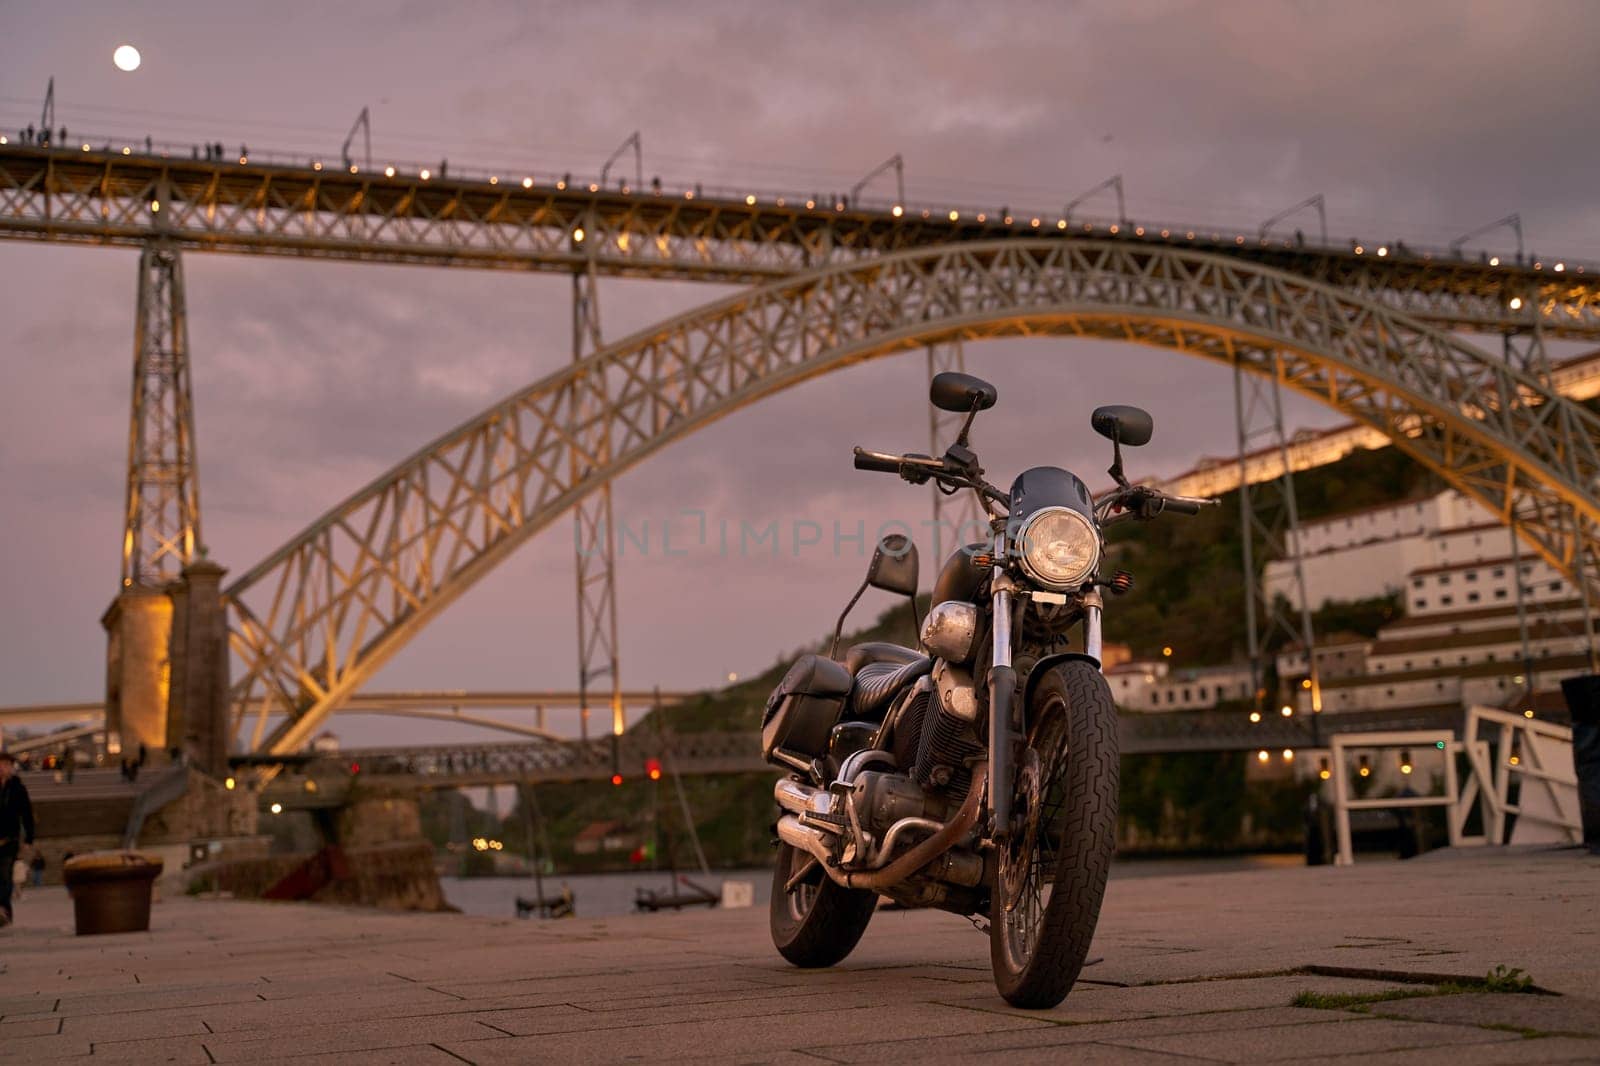 Old bike in Porto, Portugal by berezko